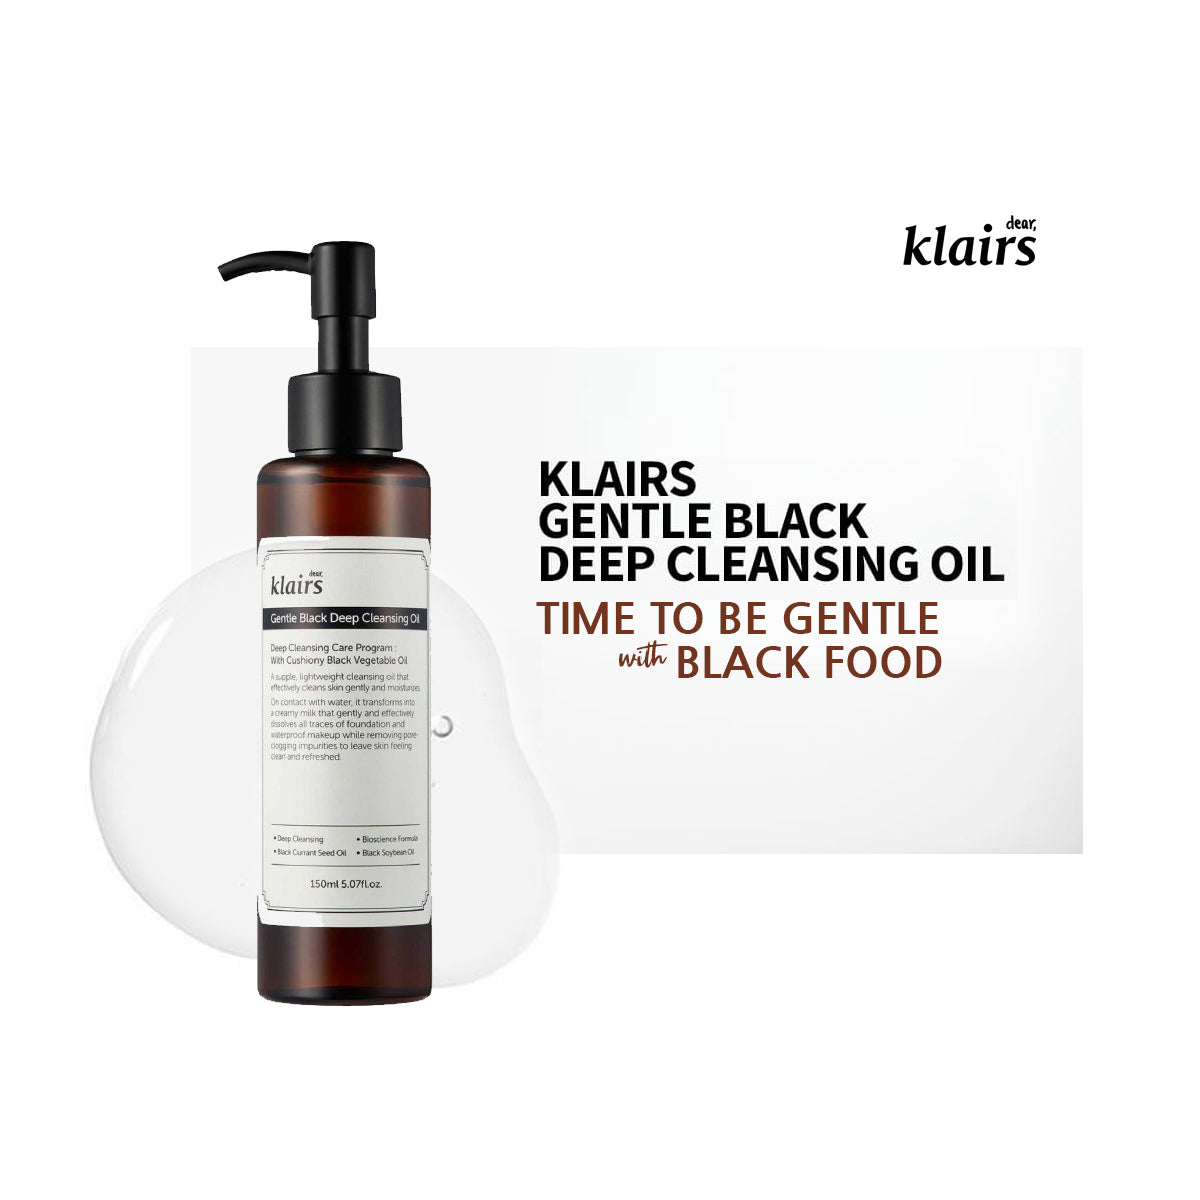 KLAIRS Gentle Black Deep Cleansing Oil from Dear, Klairs